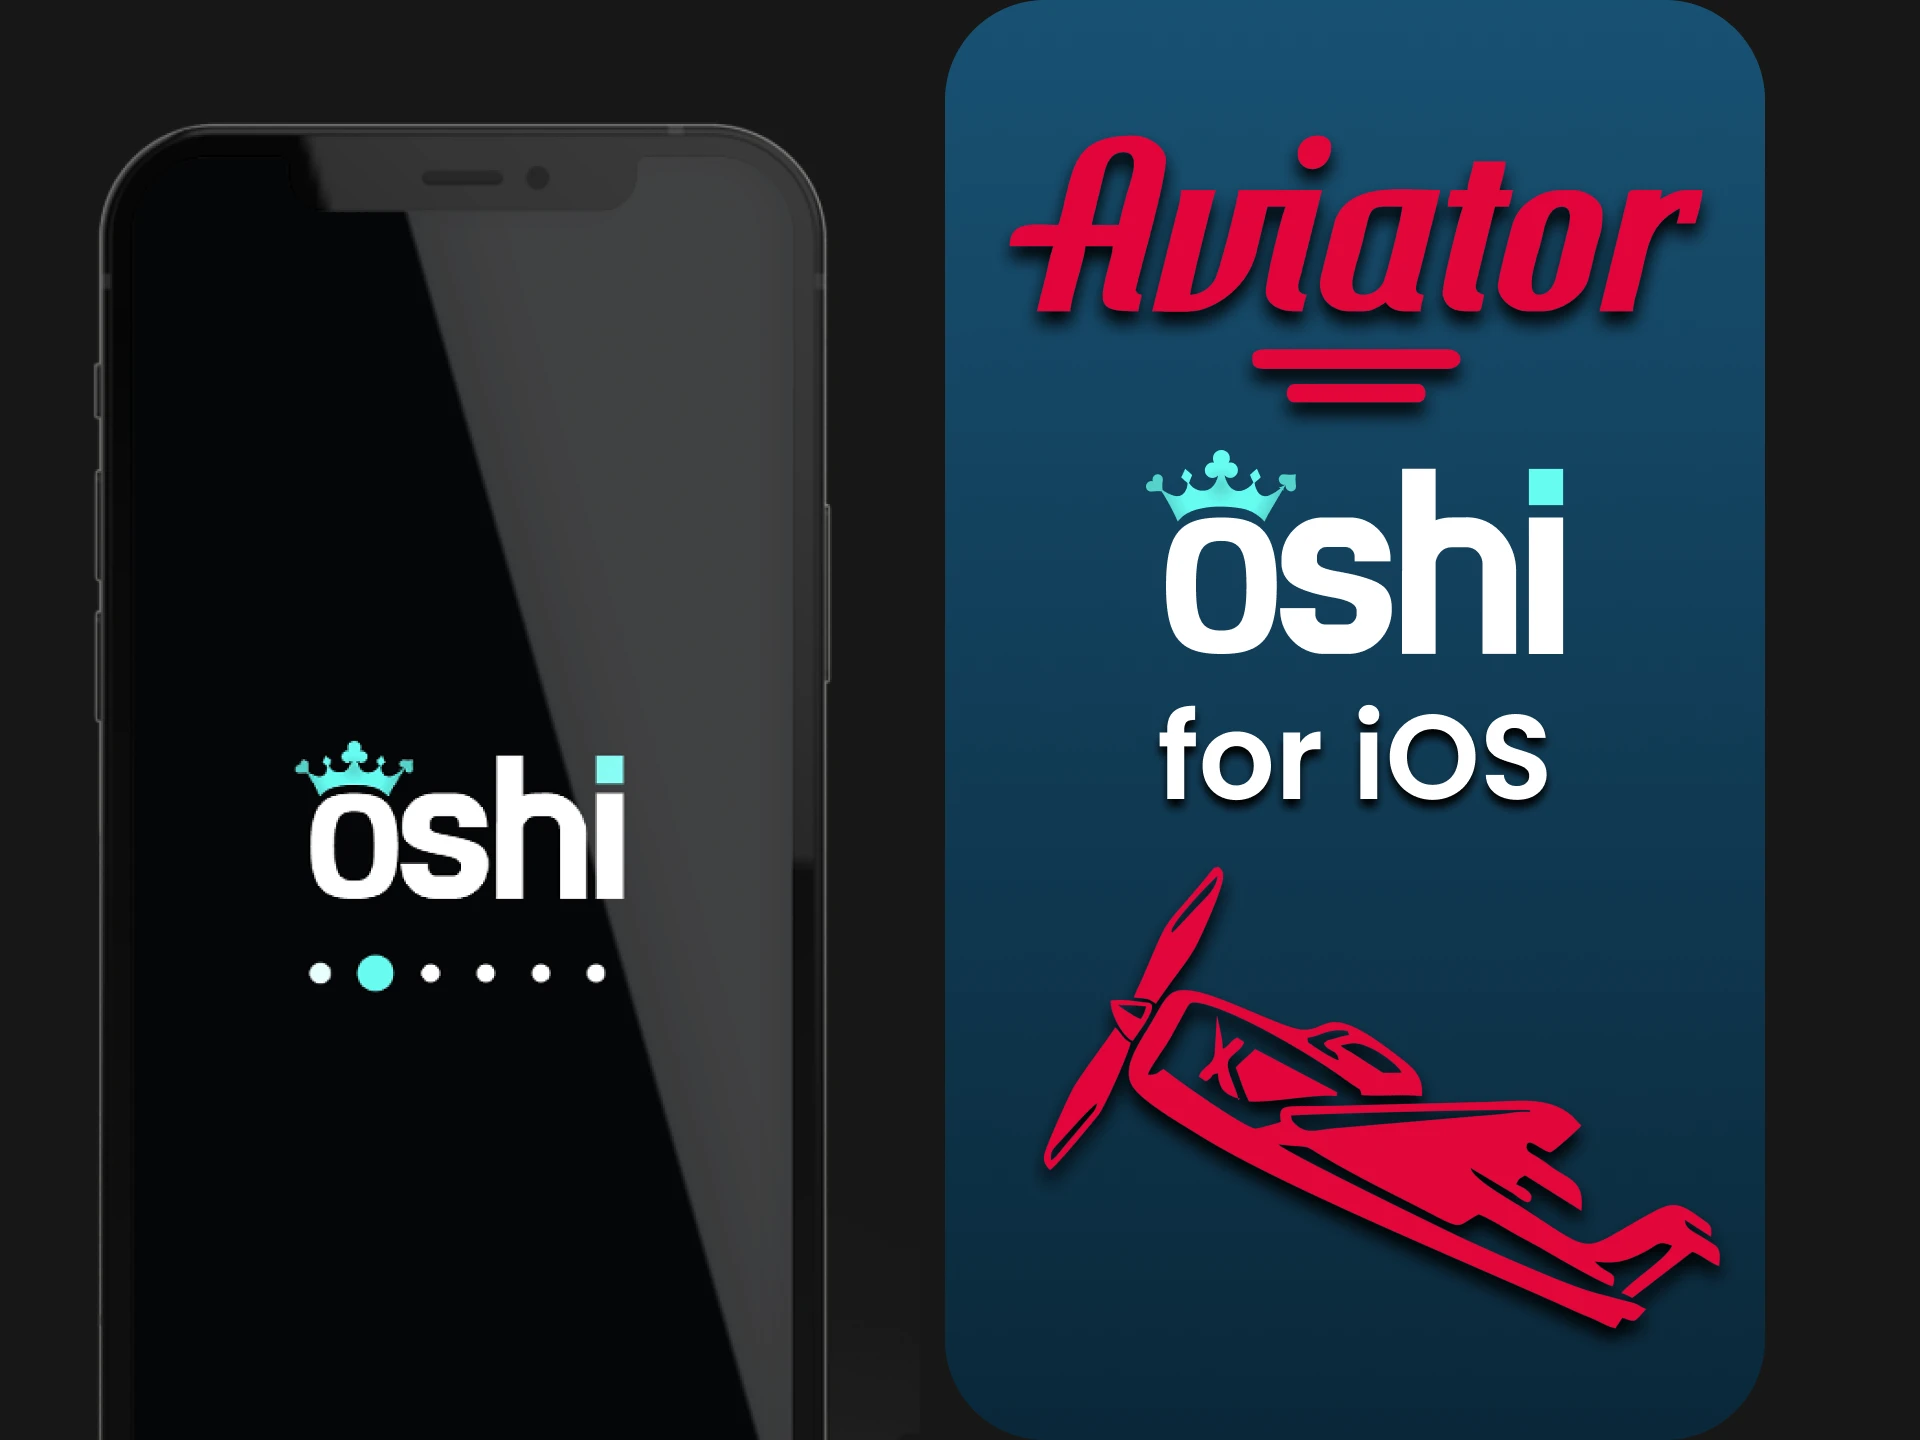 Install the Oshi Casino app to play Aviator on iOS.